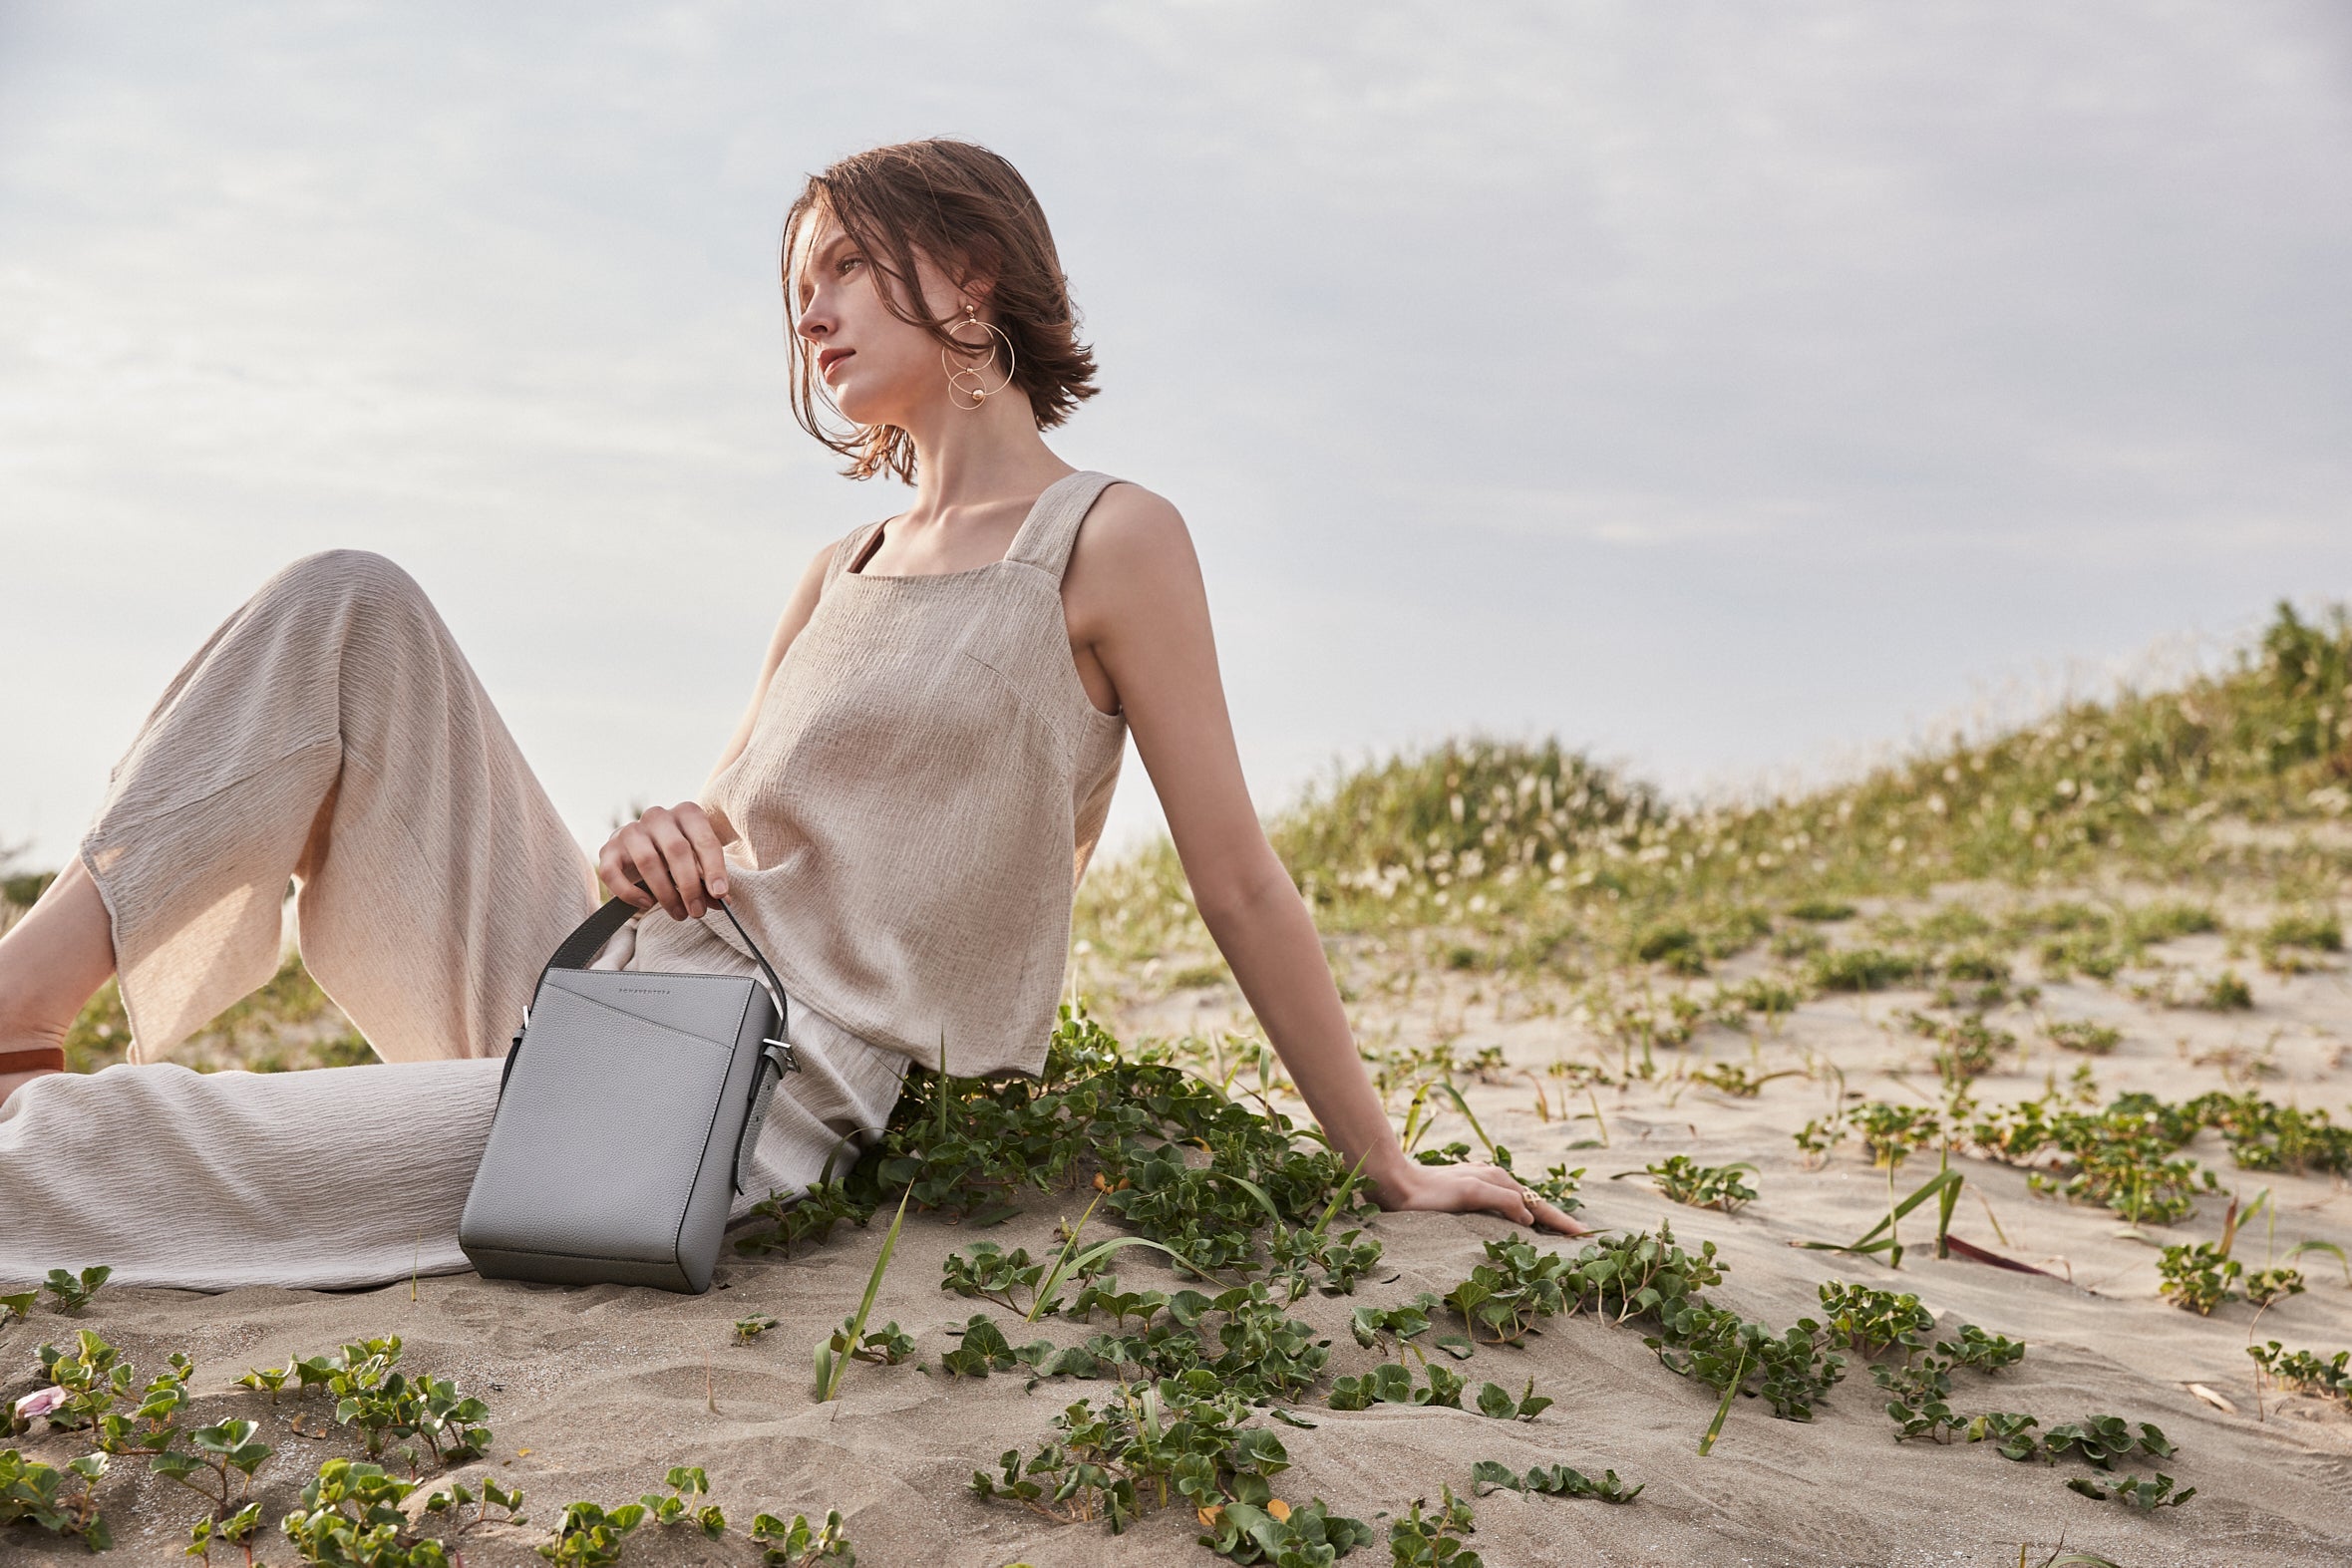 Egy stílusos nő egy fenntartható BONAVENTURA táskát hord a tengerparton tett kirándulás során, amely teljes bőrből készült.